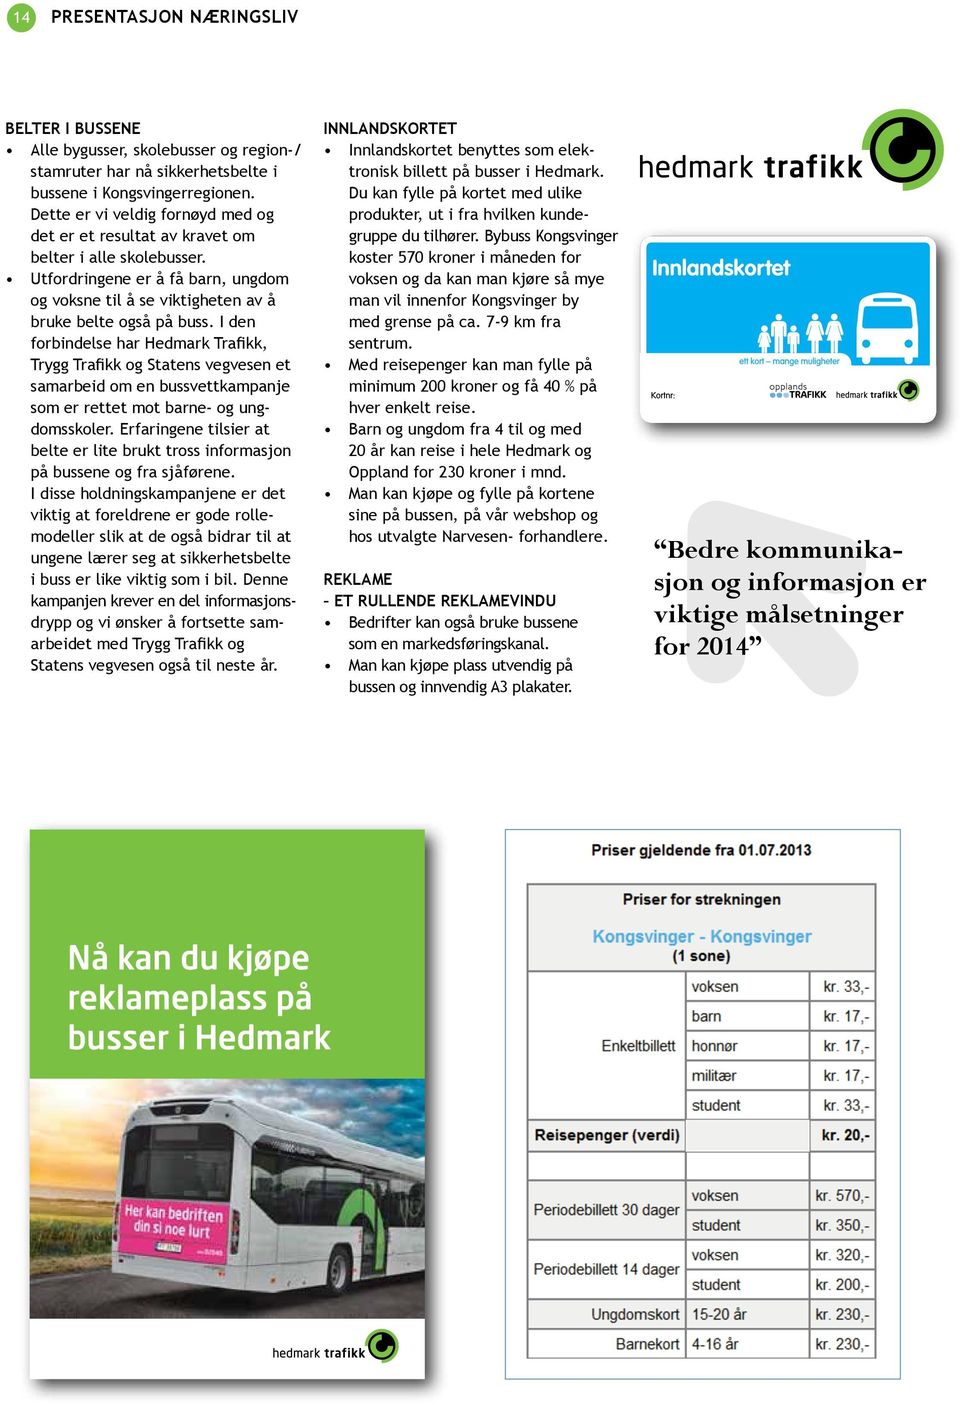 I den forbindelse har Hedmark Trafikk, Trygg Trafikk og Statens vegvesen et samarbeid om en bussvettkampanje som er rettet mot barne- og ungdomsskoler.